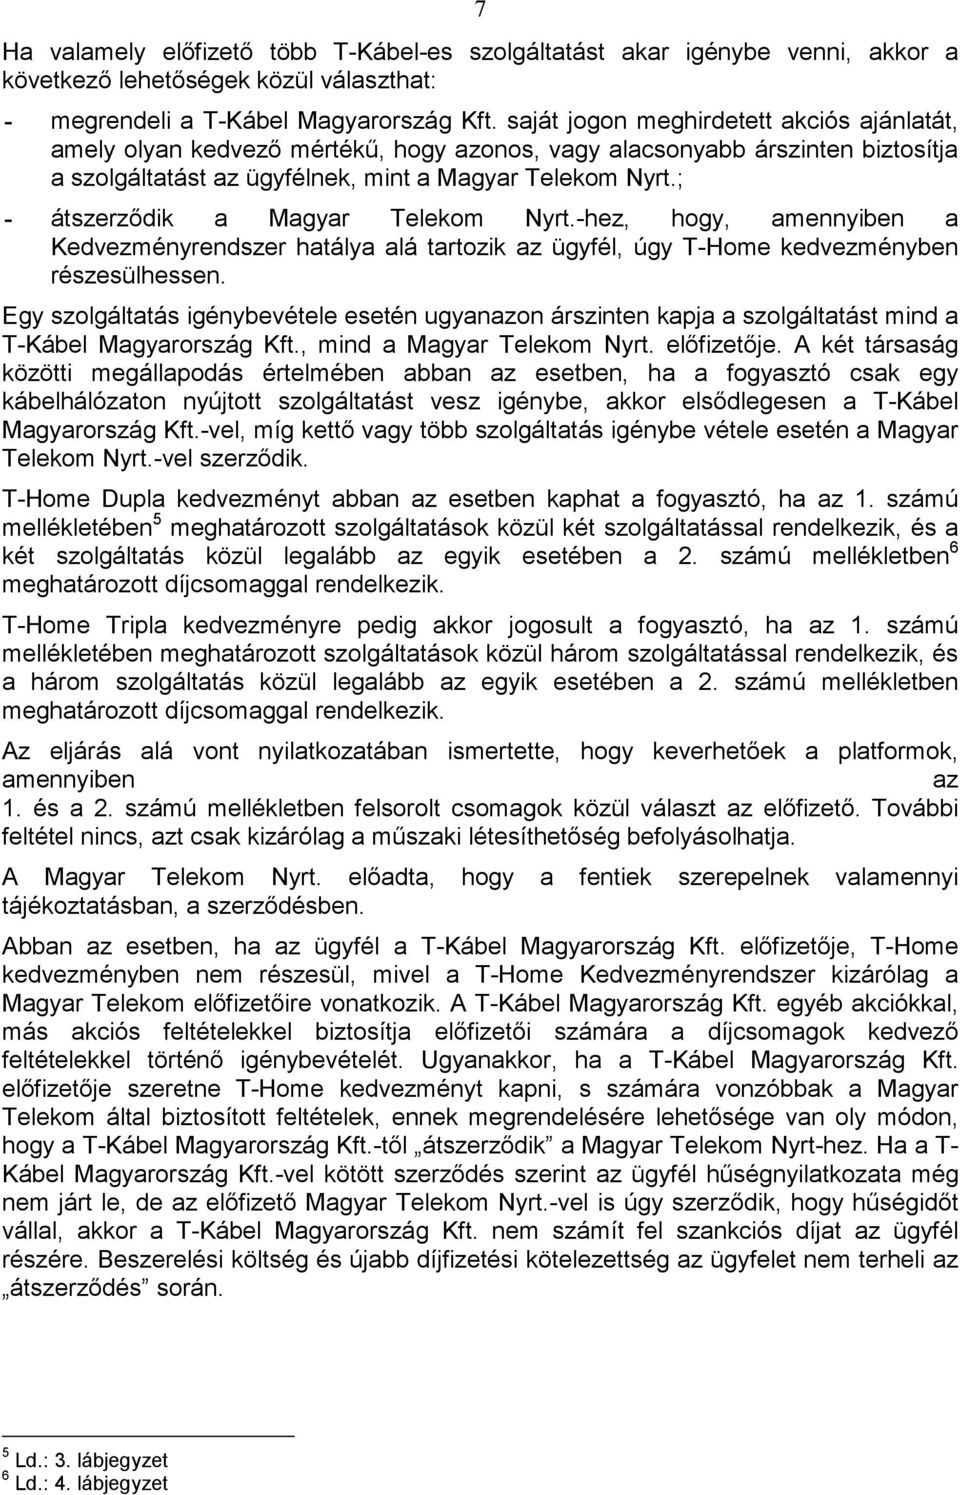 ; - átszerzıdik a Magyar Telekom Nyrt.-hez, hogy, amennyiben a Kedvezményrendszer hatálya alá tartozik az ügyfél, úgy T-Home kedvezményben részesülhessen.